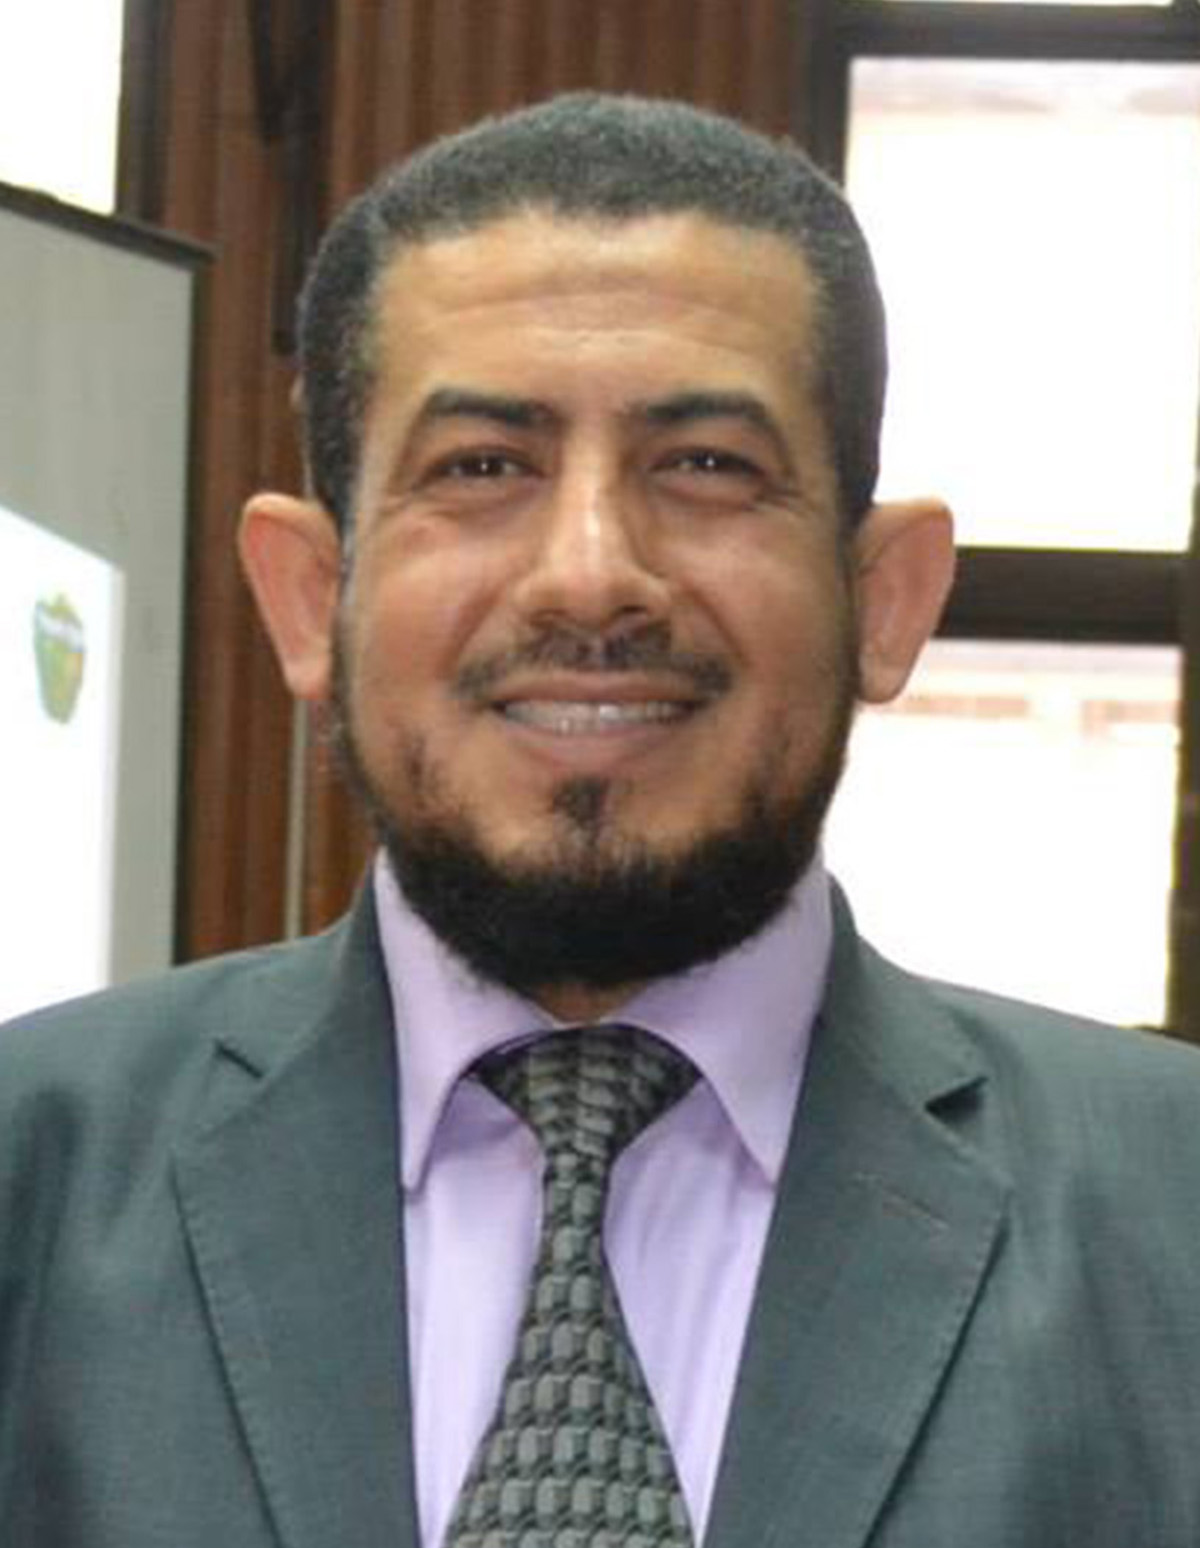 An image of Dr. Assem Abdel Hak